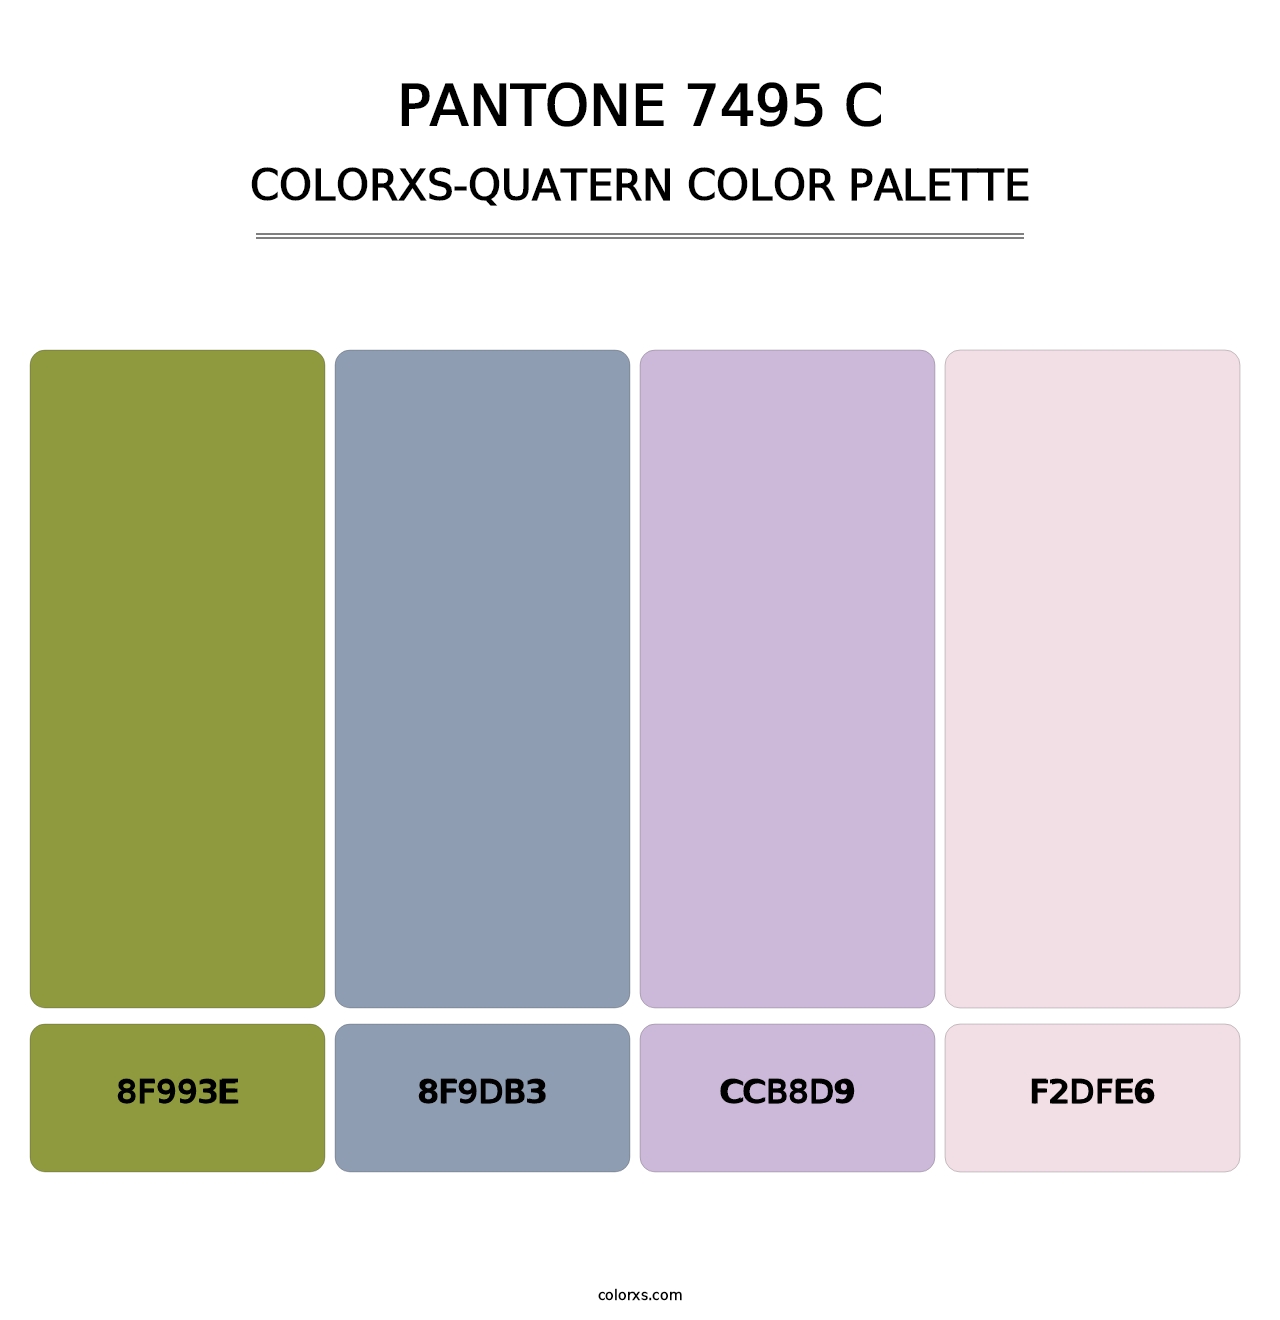 PANTONE 7495 C - Colorxs Quatern Palette